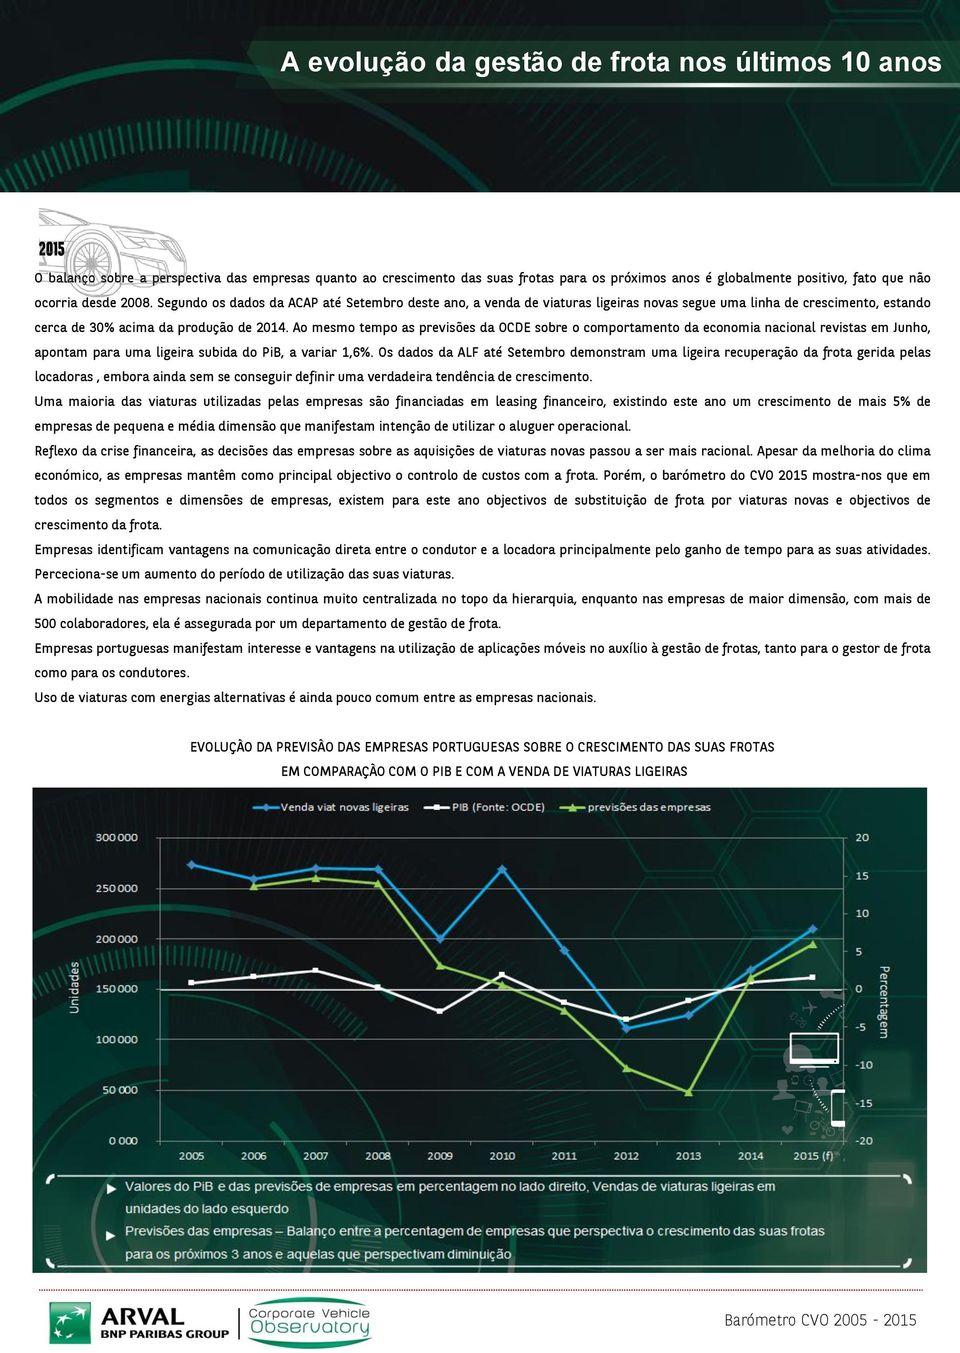 Ao mesmo tempo as previsões da OCDE sobre o comportamento da economia nacional revistas em Junho, apontam para uma ligeira subida do PiB, a variar 1,6%.